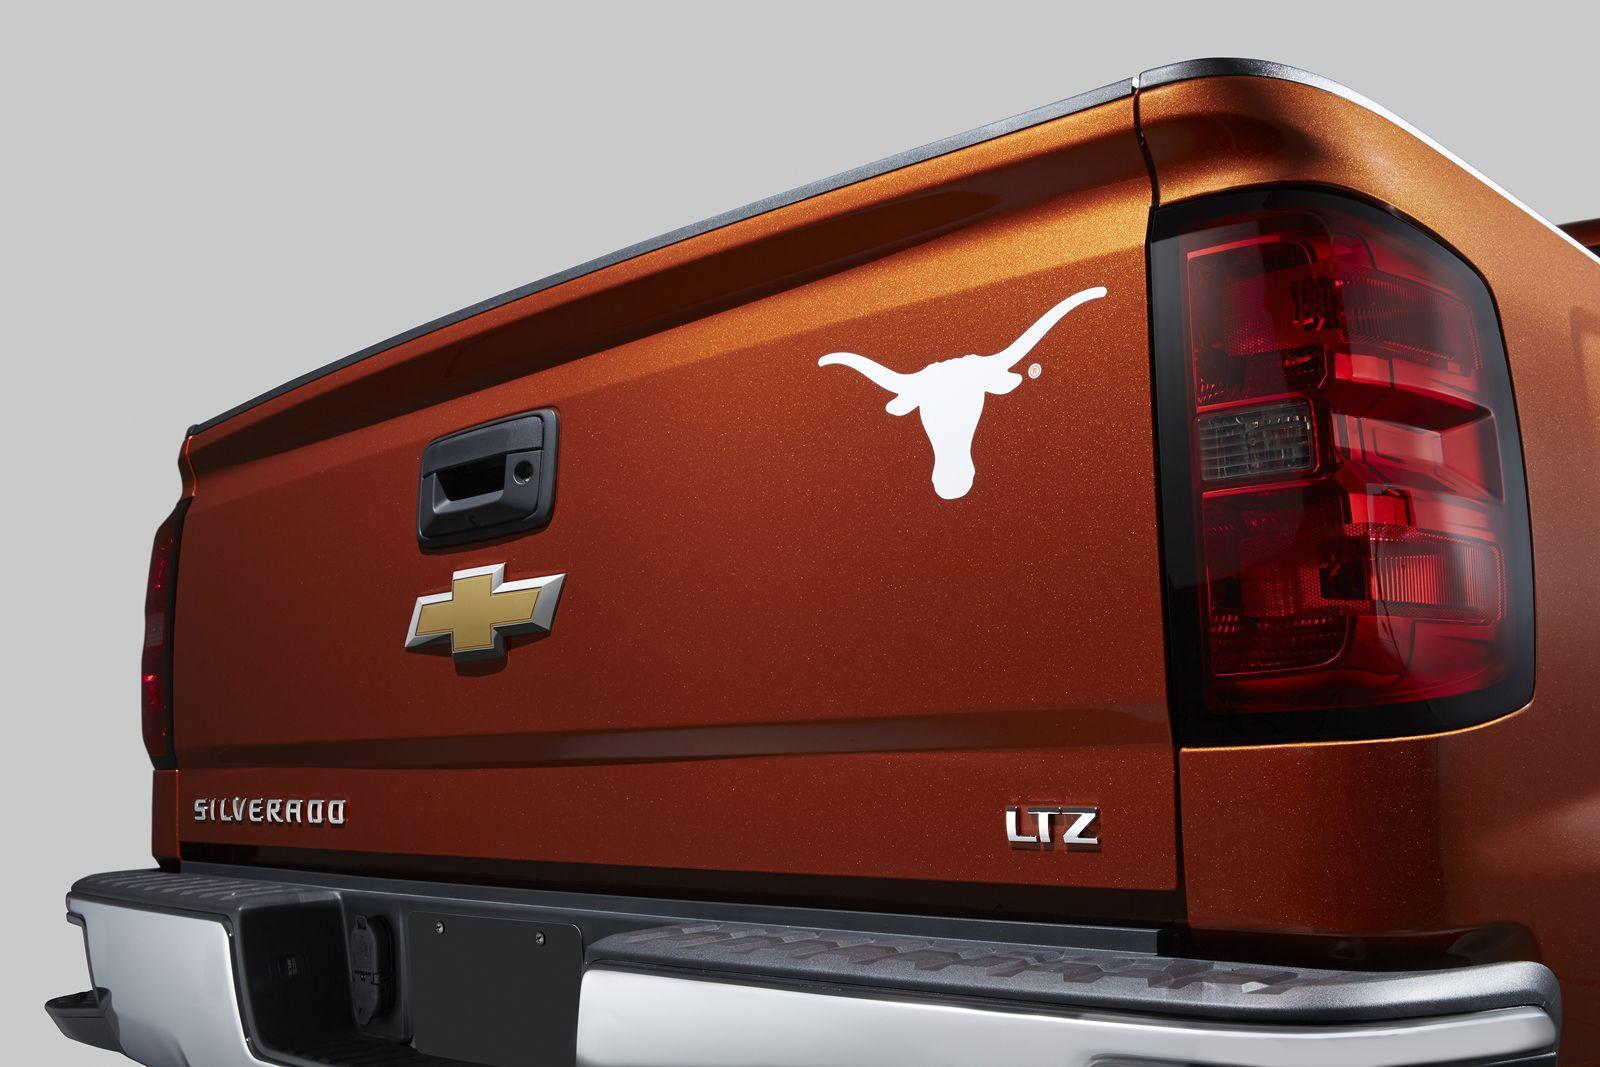 Chevrolet Silverado Gets University of Texas Longhorns Special Edition